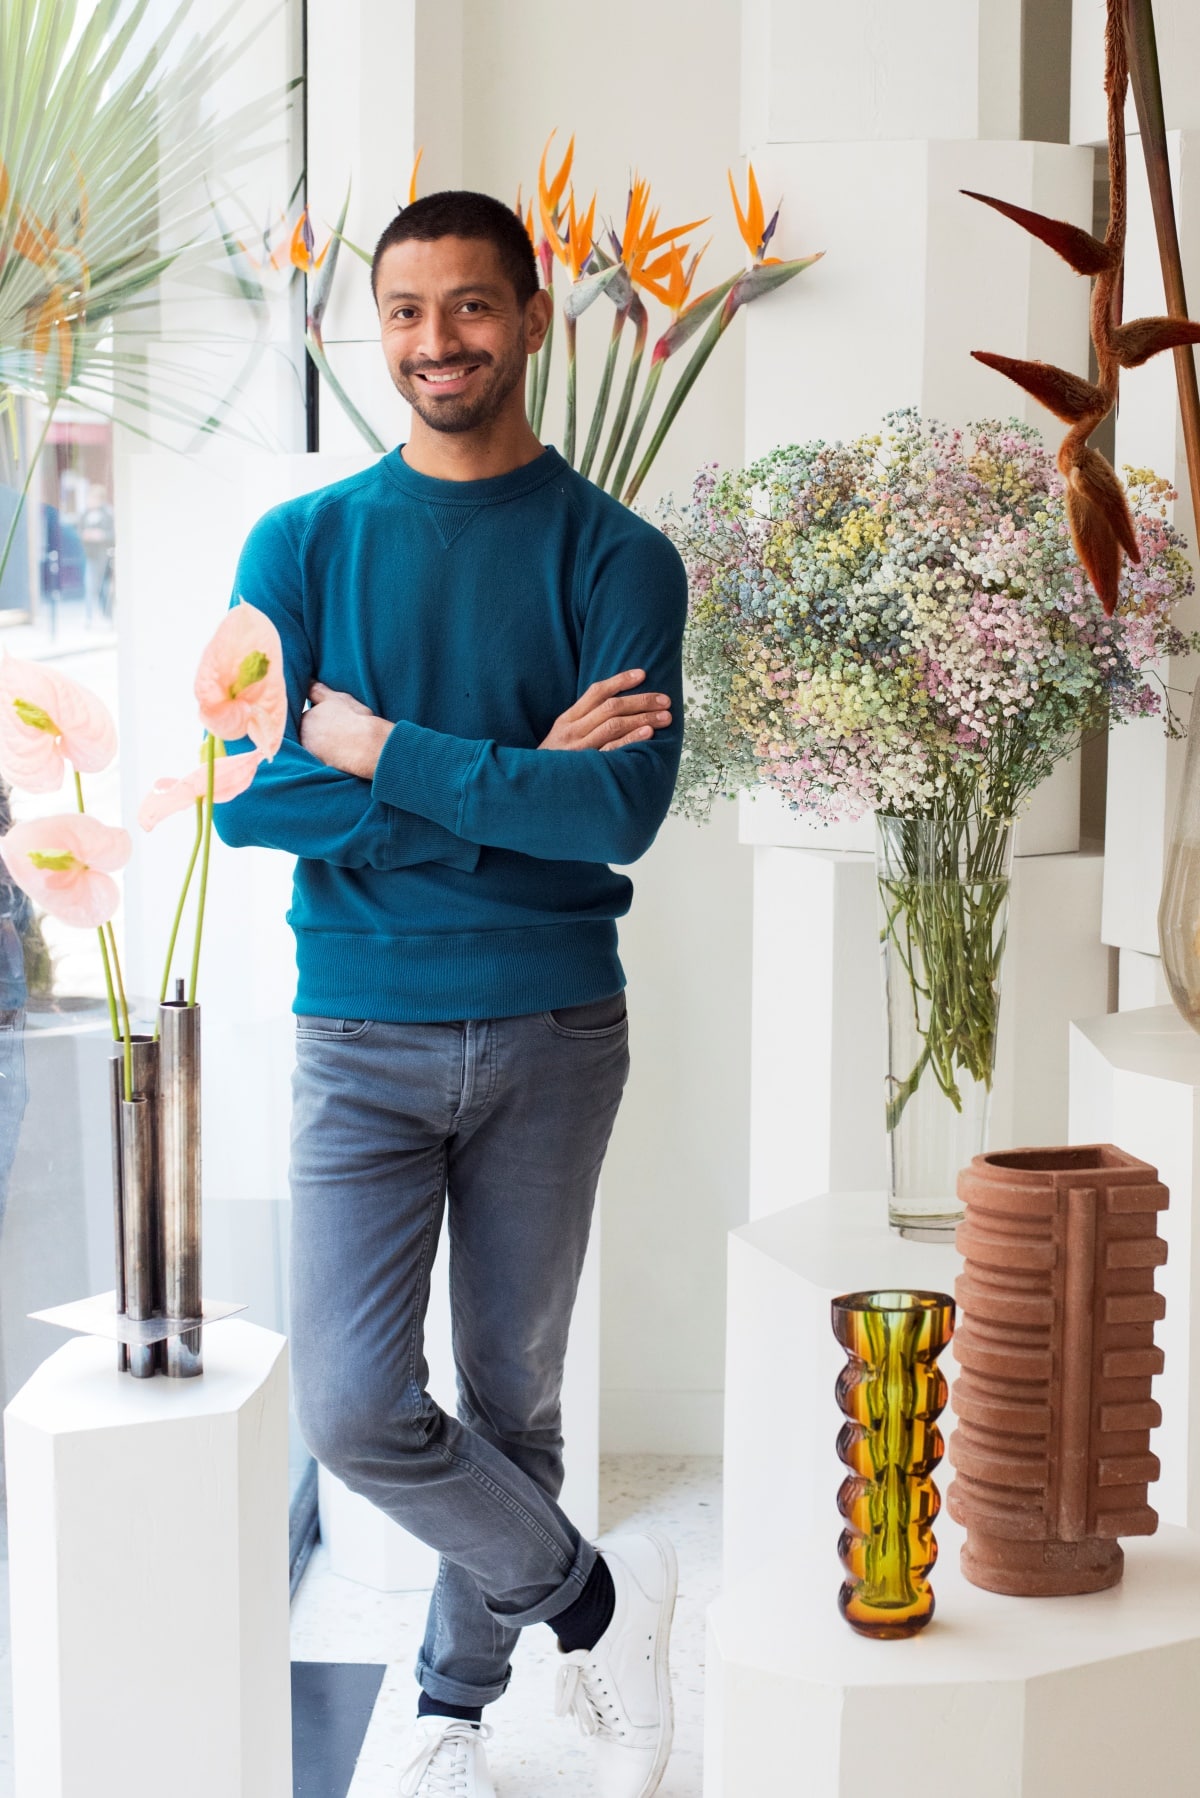 Le fleuriste Arturo Arita expose à Paris – “je souhaite faire connaître mon travail au grand public”